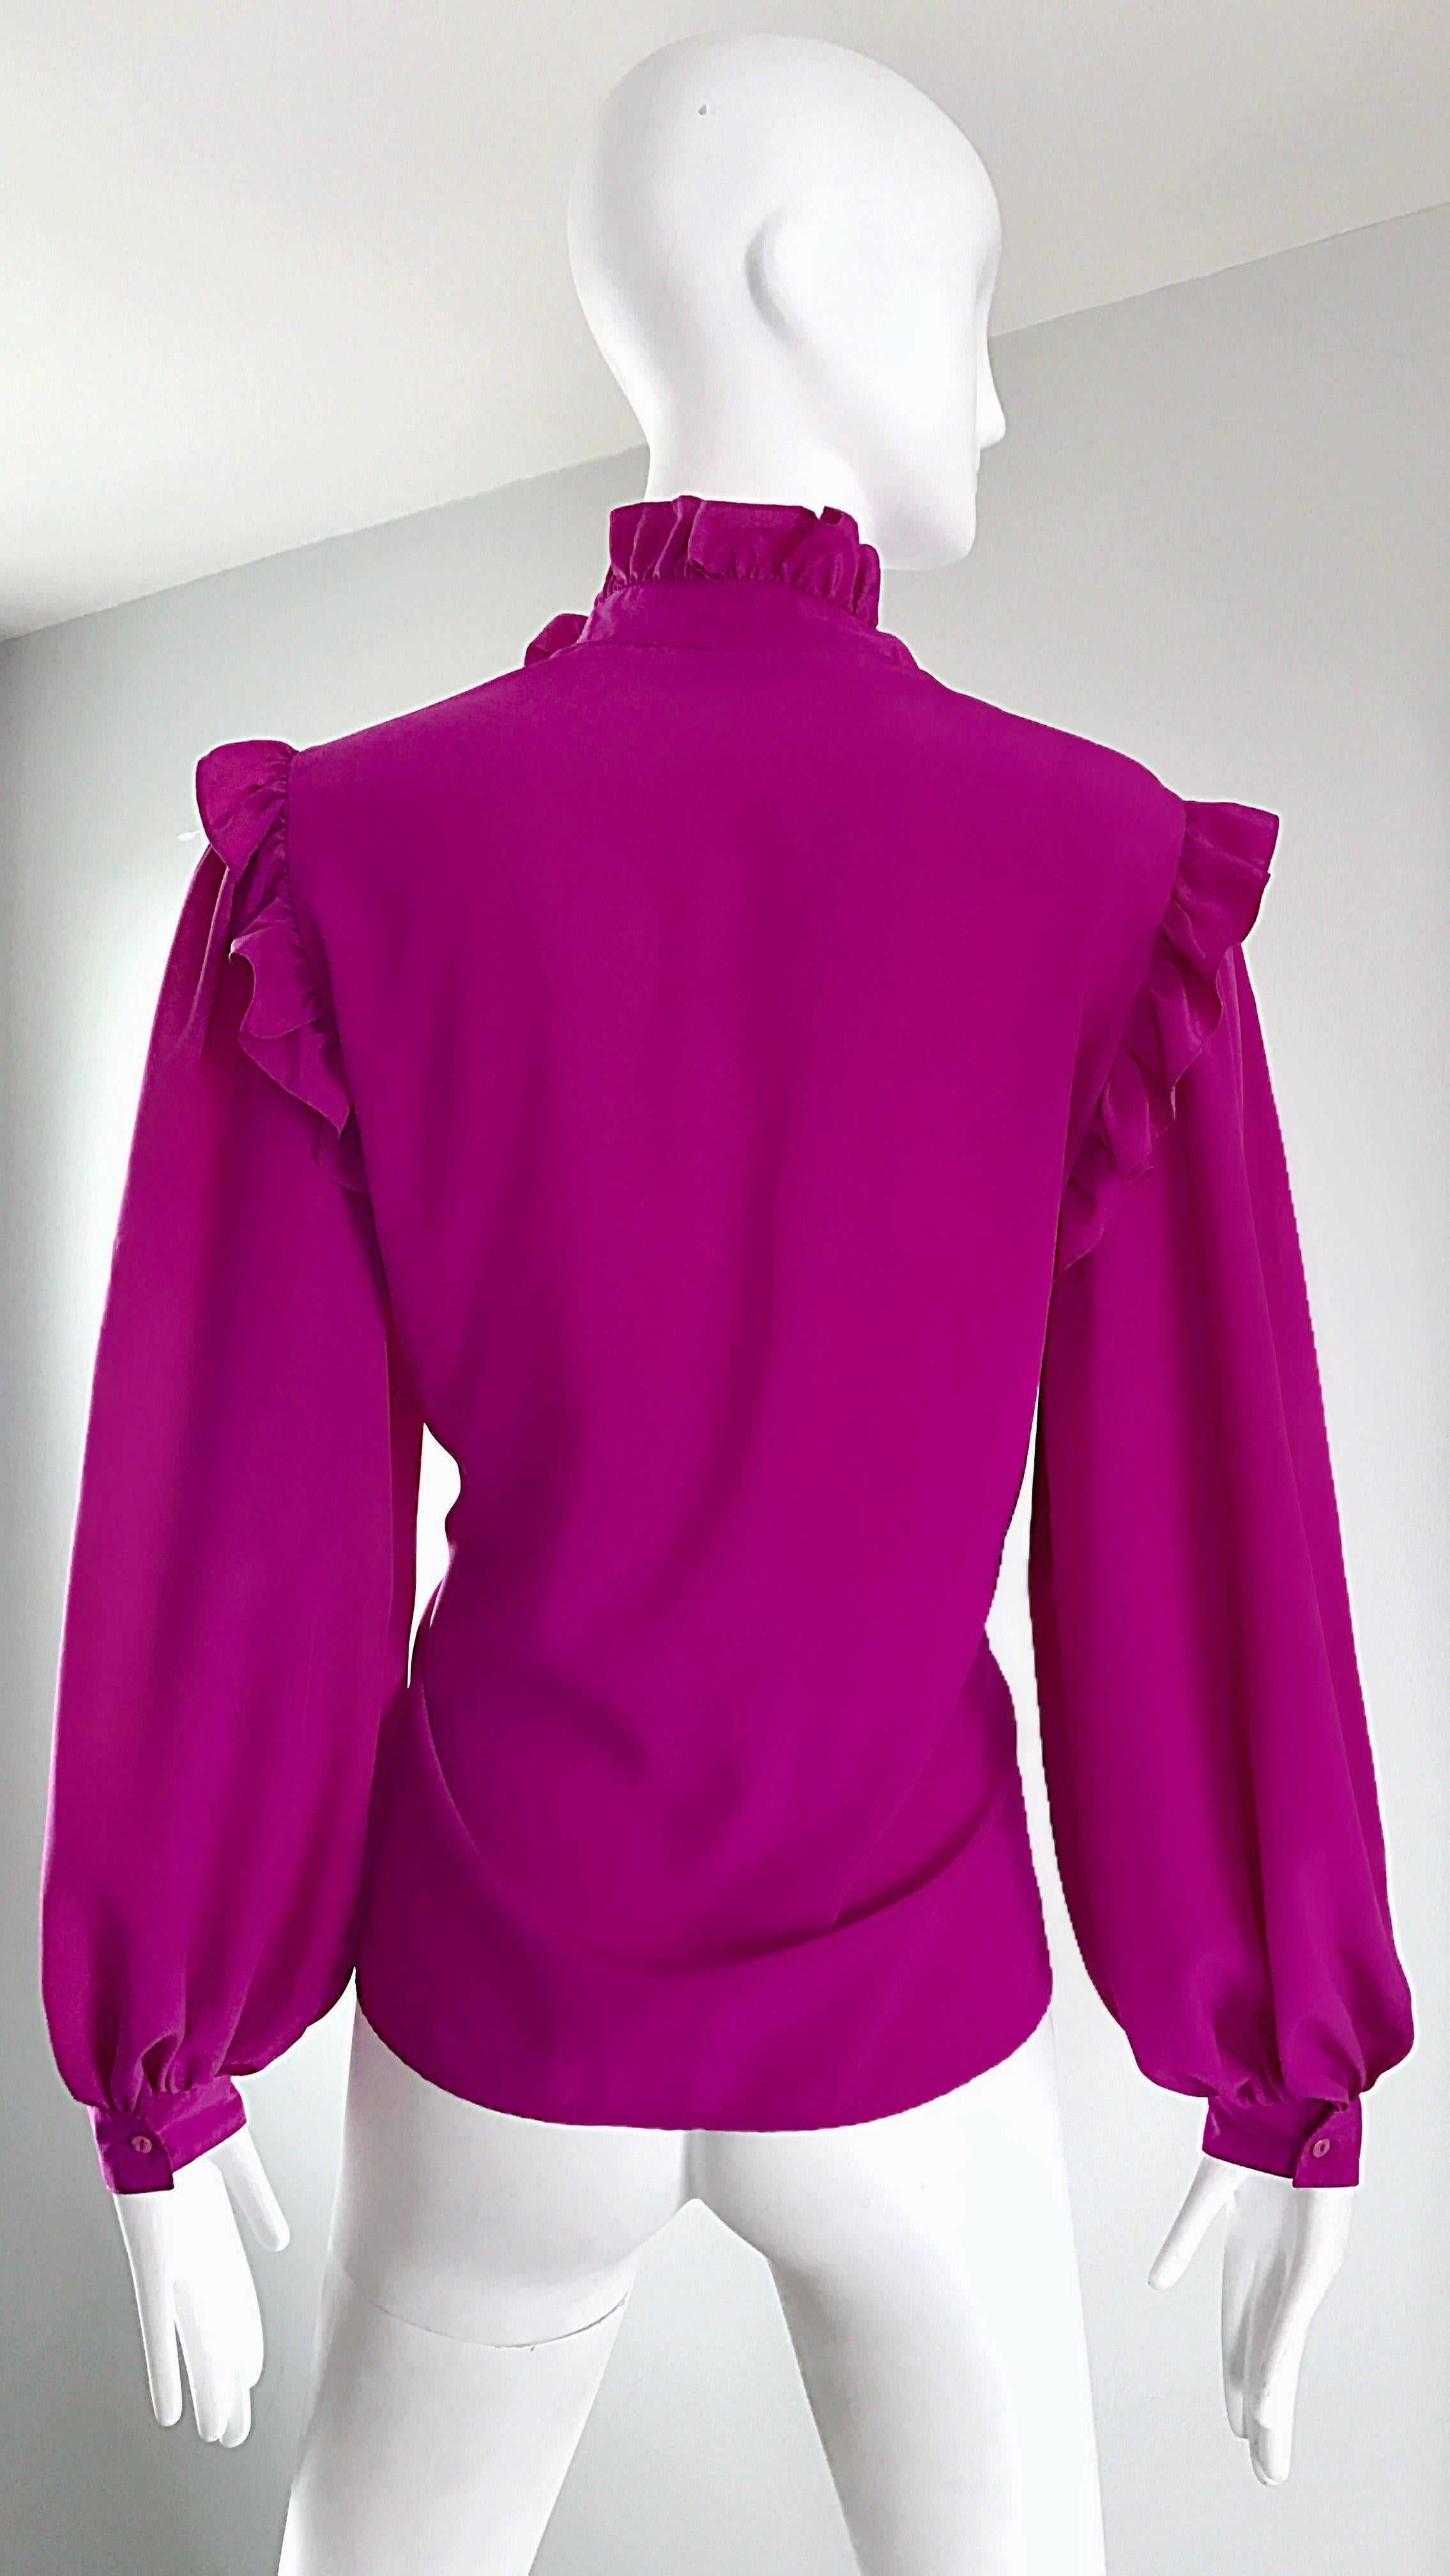 Oscar de la Renta 1970s Magenta Fuchsia Pink Silk Bishop Sleeve Vintage Blouse 4